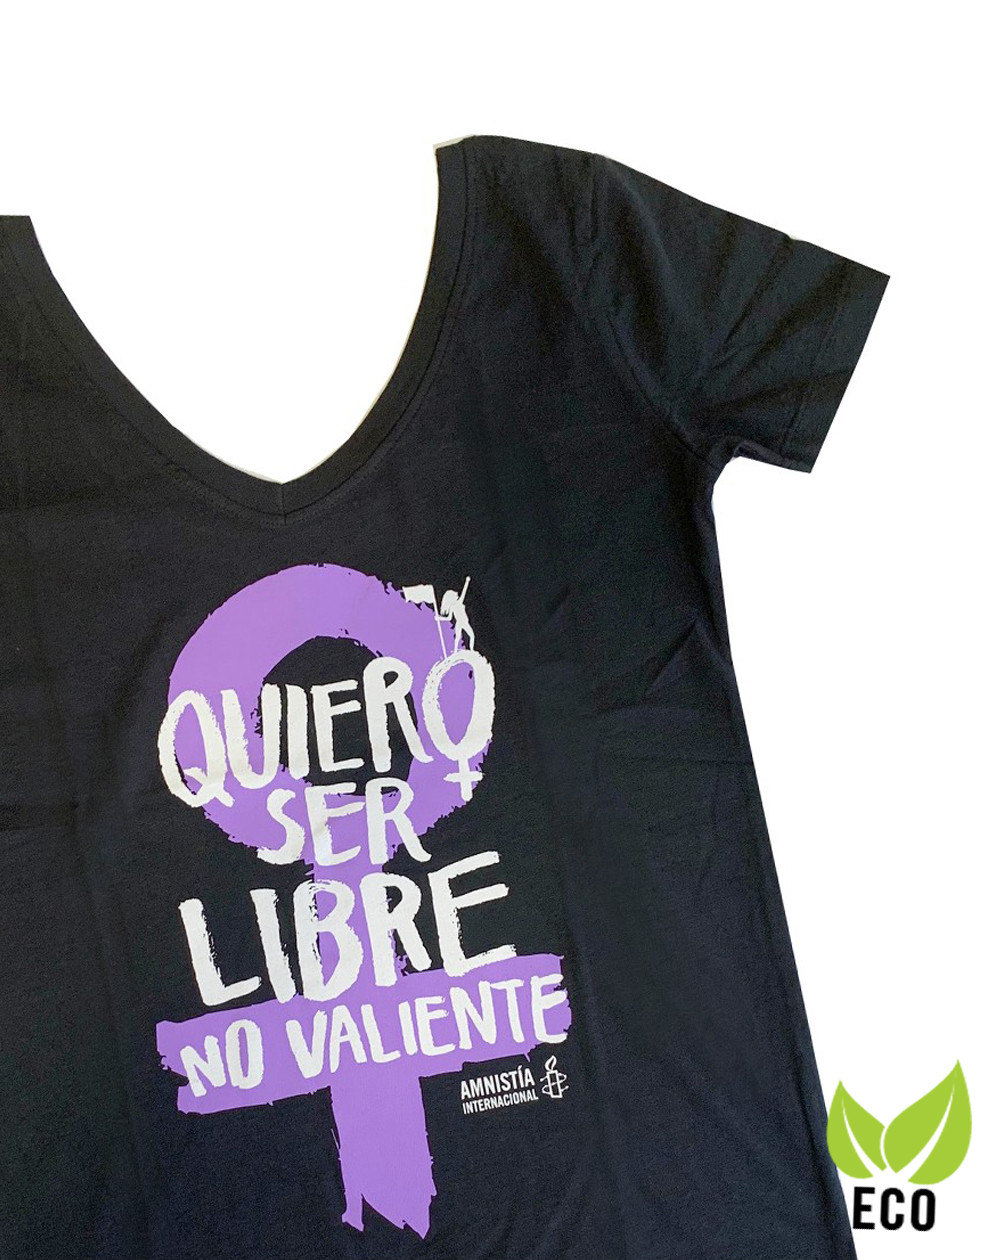 Camiseta ecológica feminista color negro